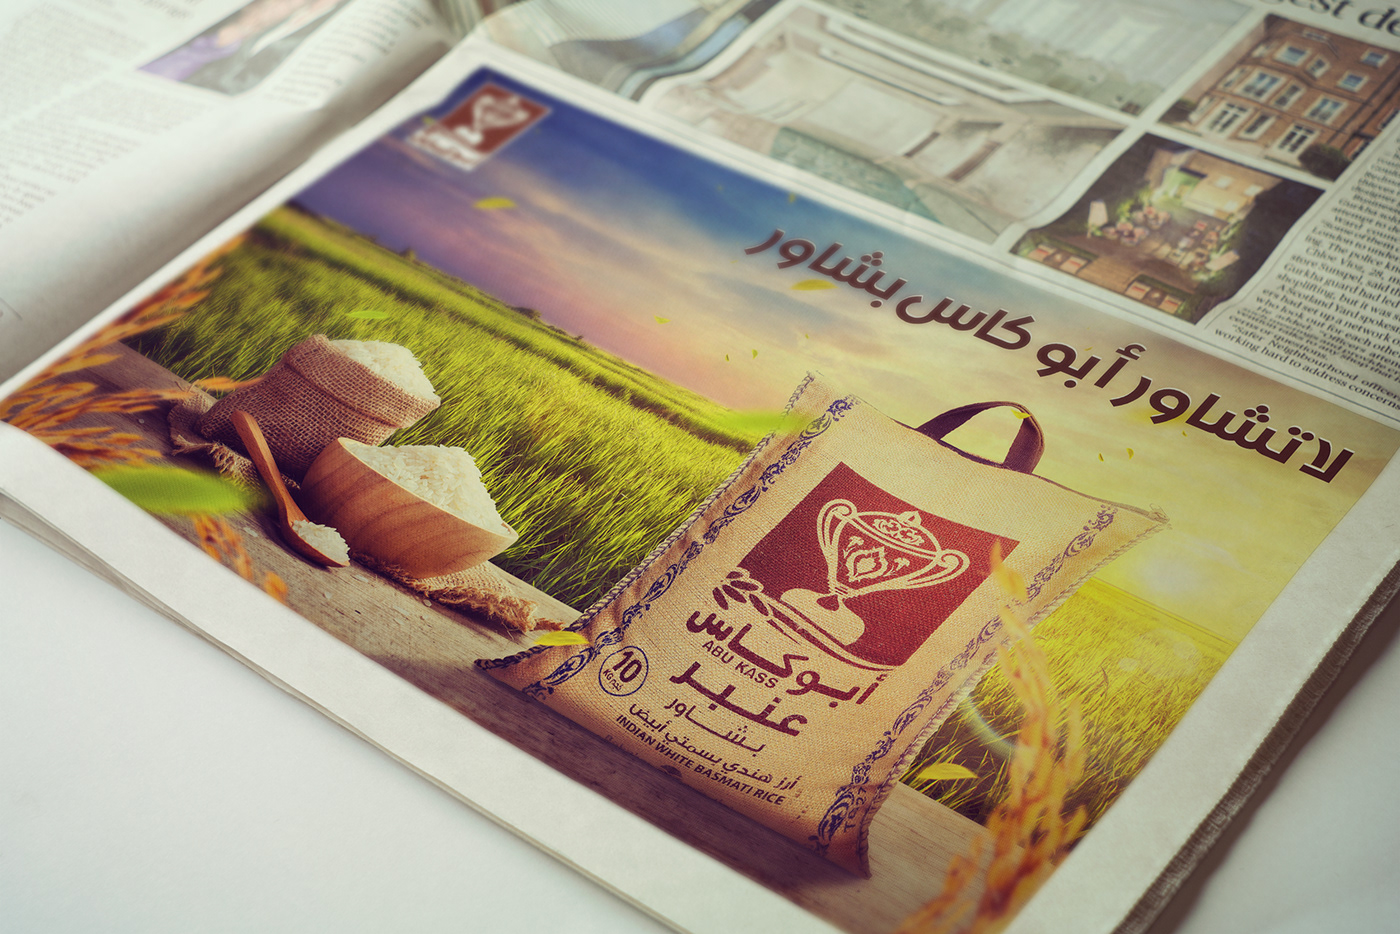 bag Pack graphic design  Rice retouching  photoshop Advertising  KSA Logotype new